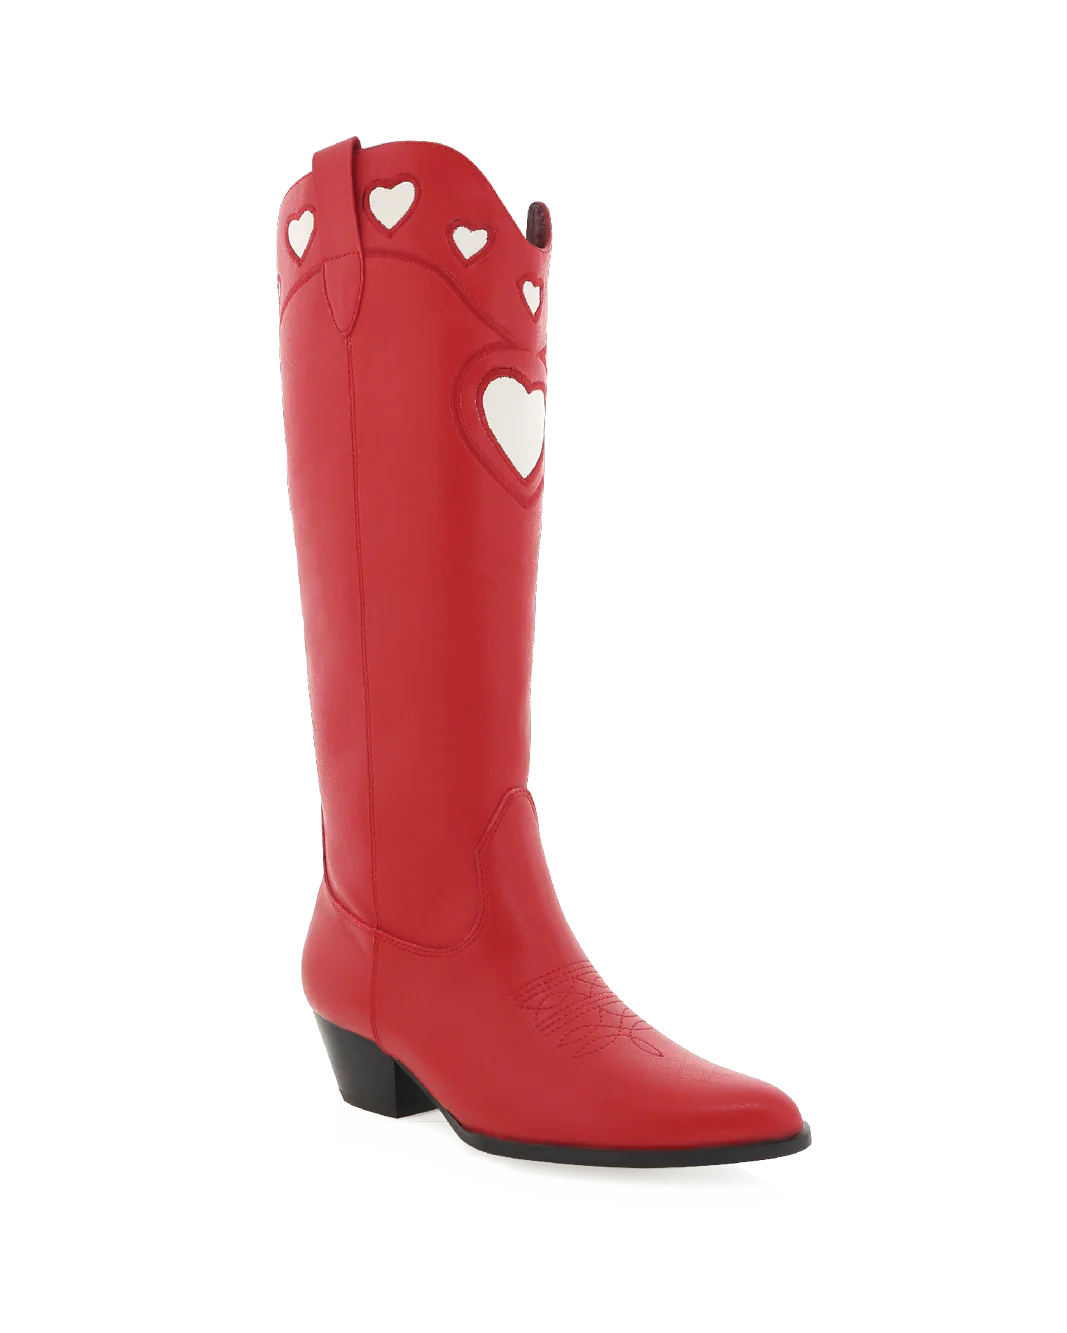 Scarlet Velma Heart Boots by Billini